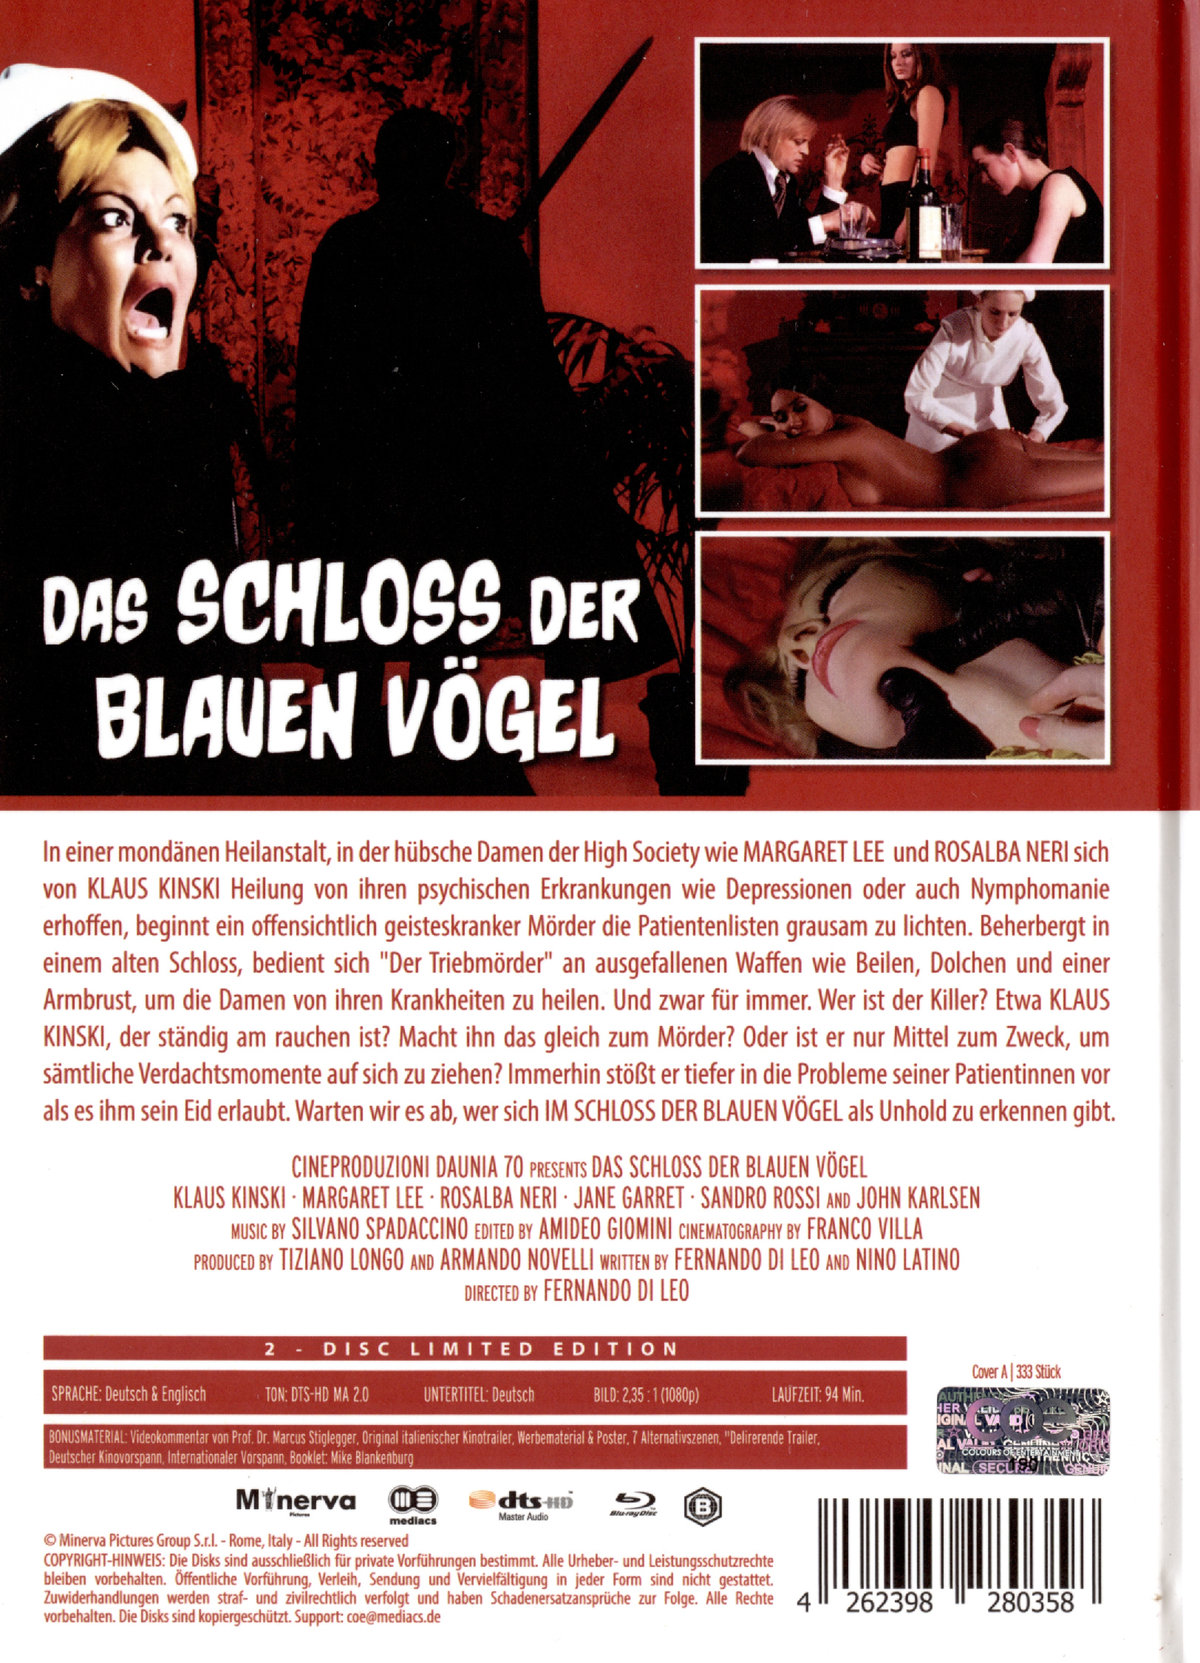 Schloss der blauen Vögel, Das - Uncut Mediabook Edition (DVD+blu-ray) (A)